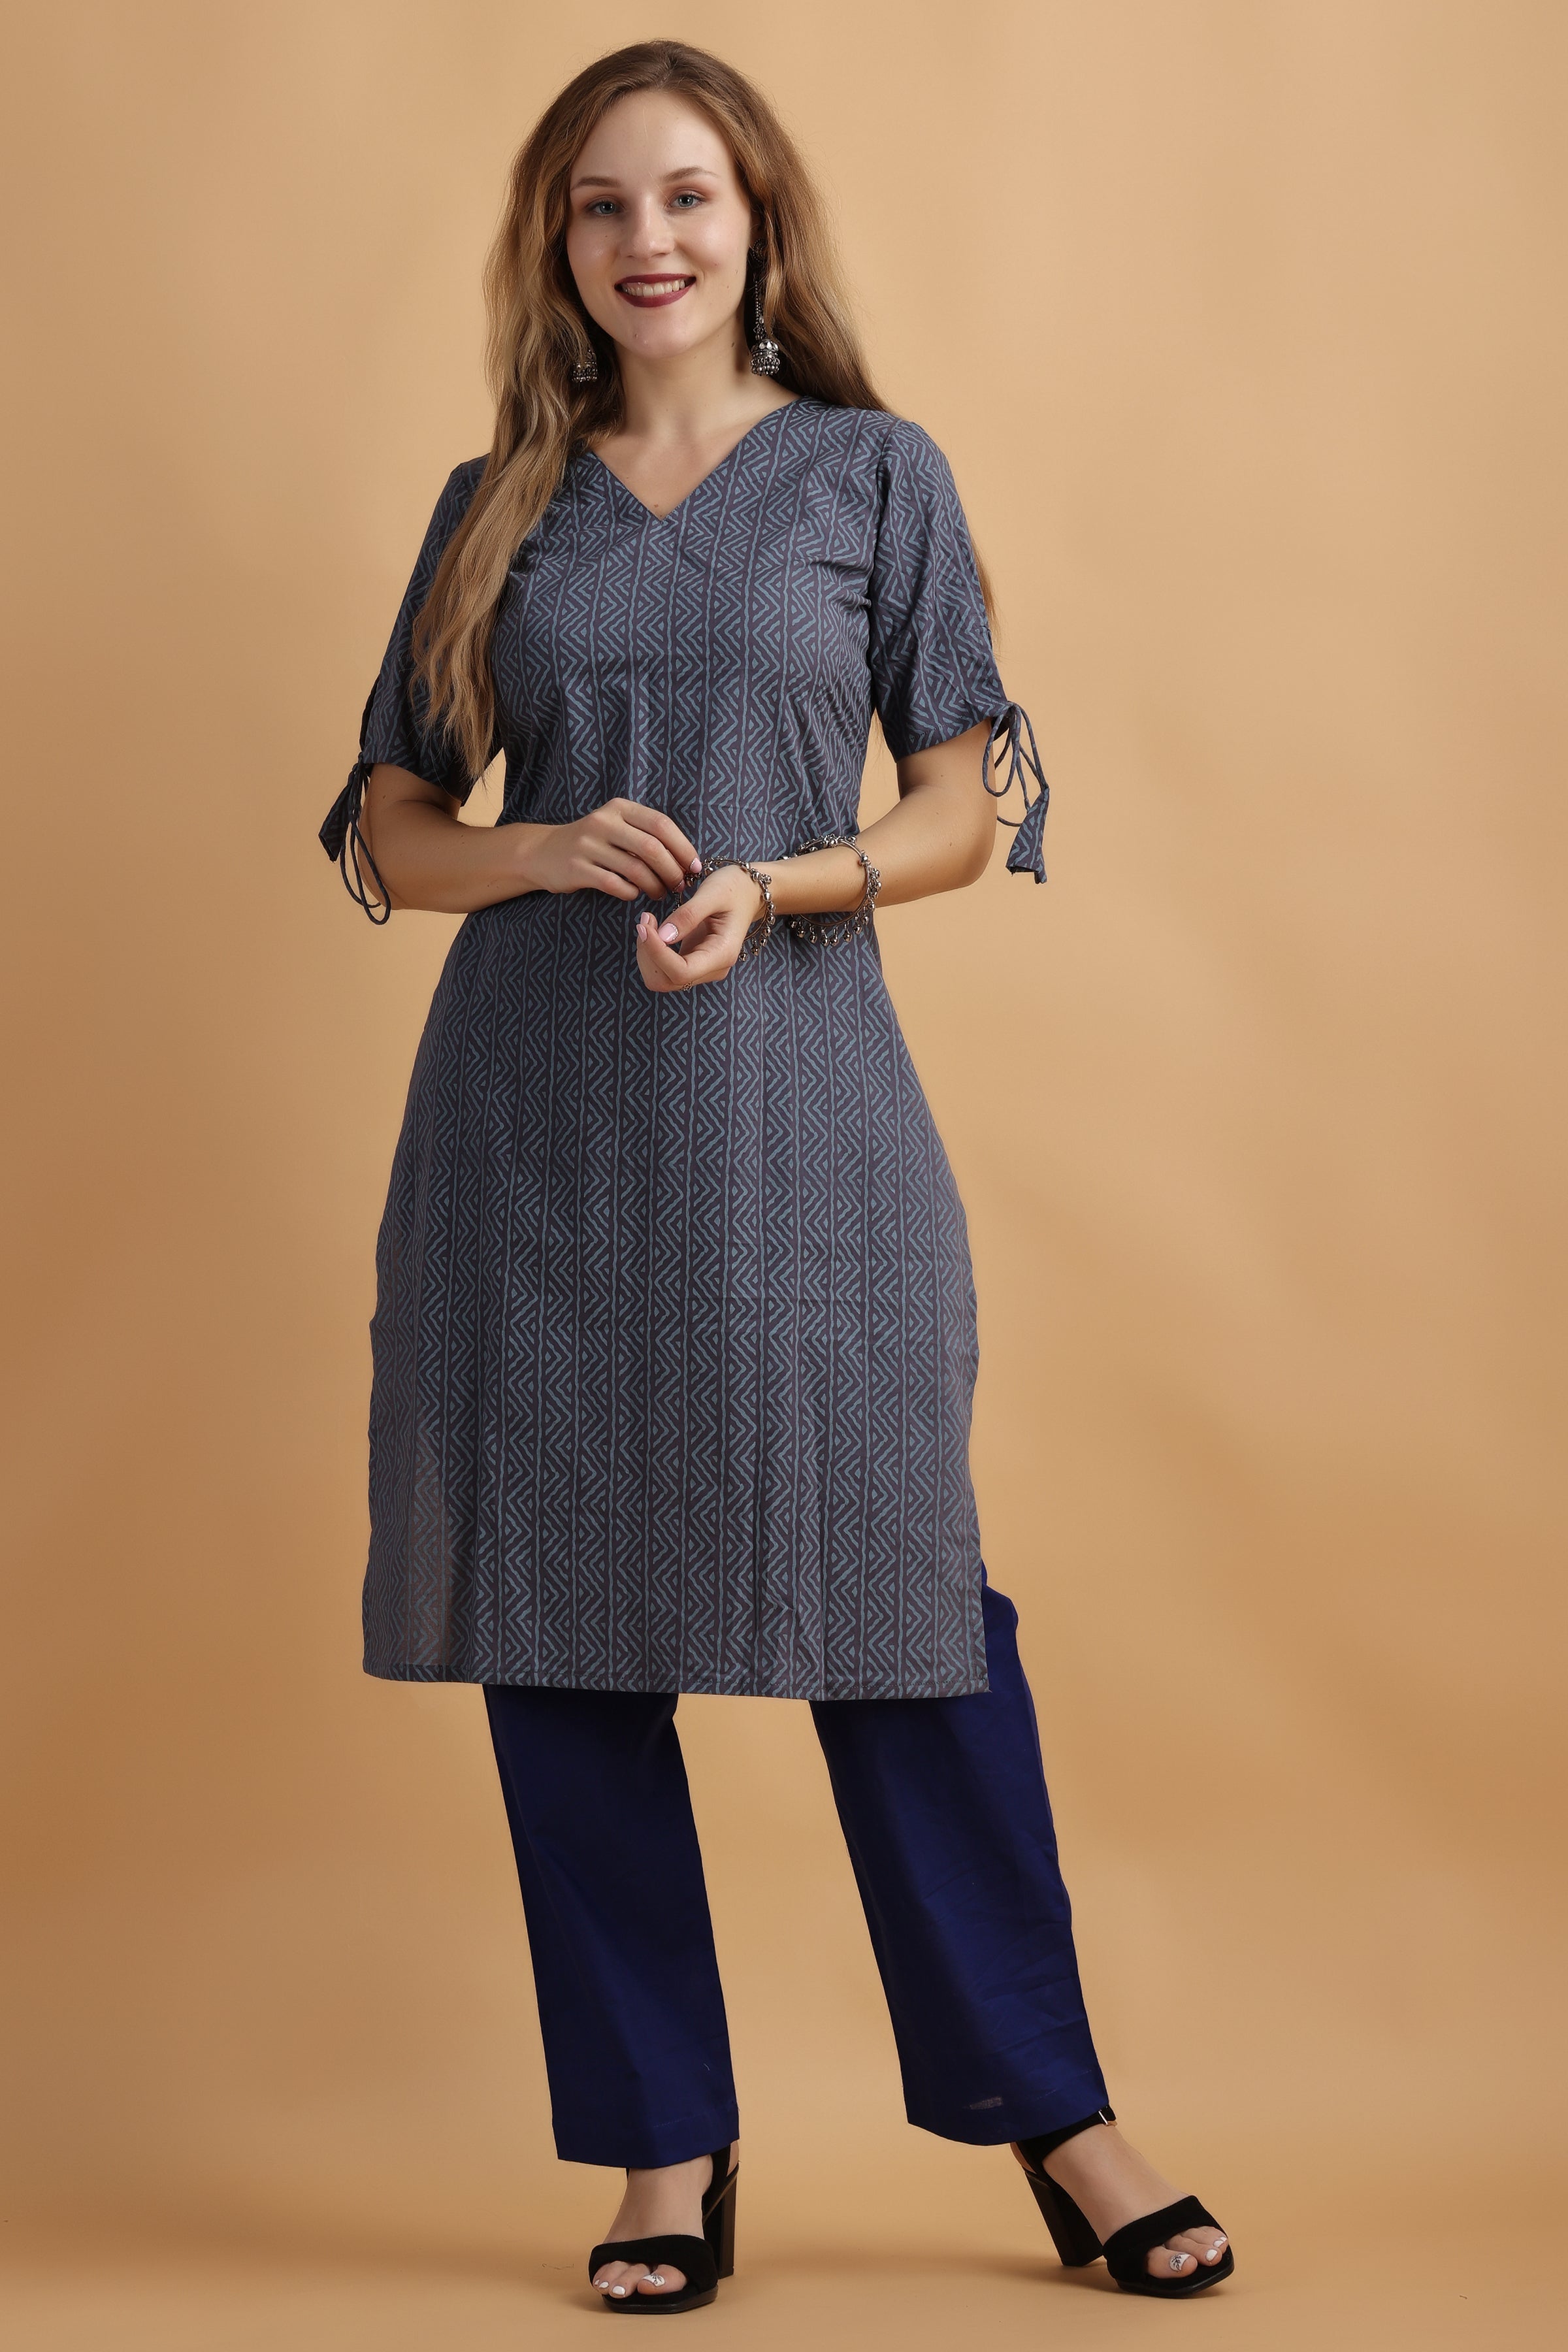 Buy Latest Designer Kurtis Online for Woman | Handloom, Cotton, Silk Designer  Kurtis Online - Suj… | Plain kurti designs, Cotton kurti designs, Kurti  designs latest